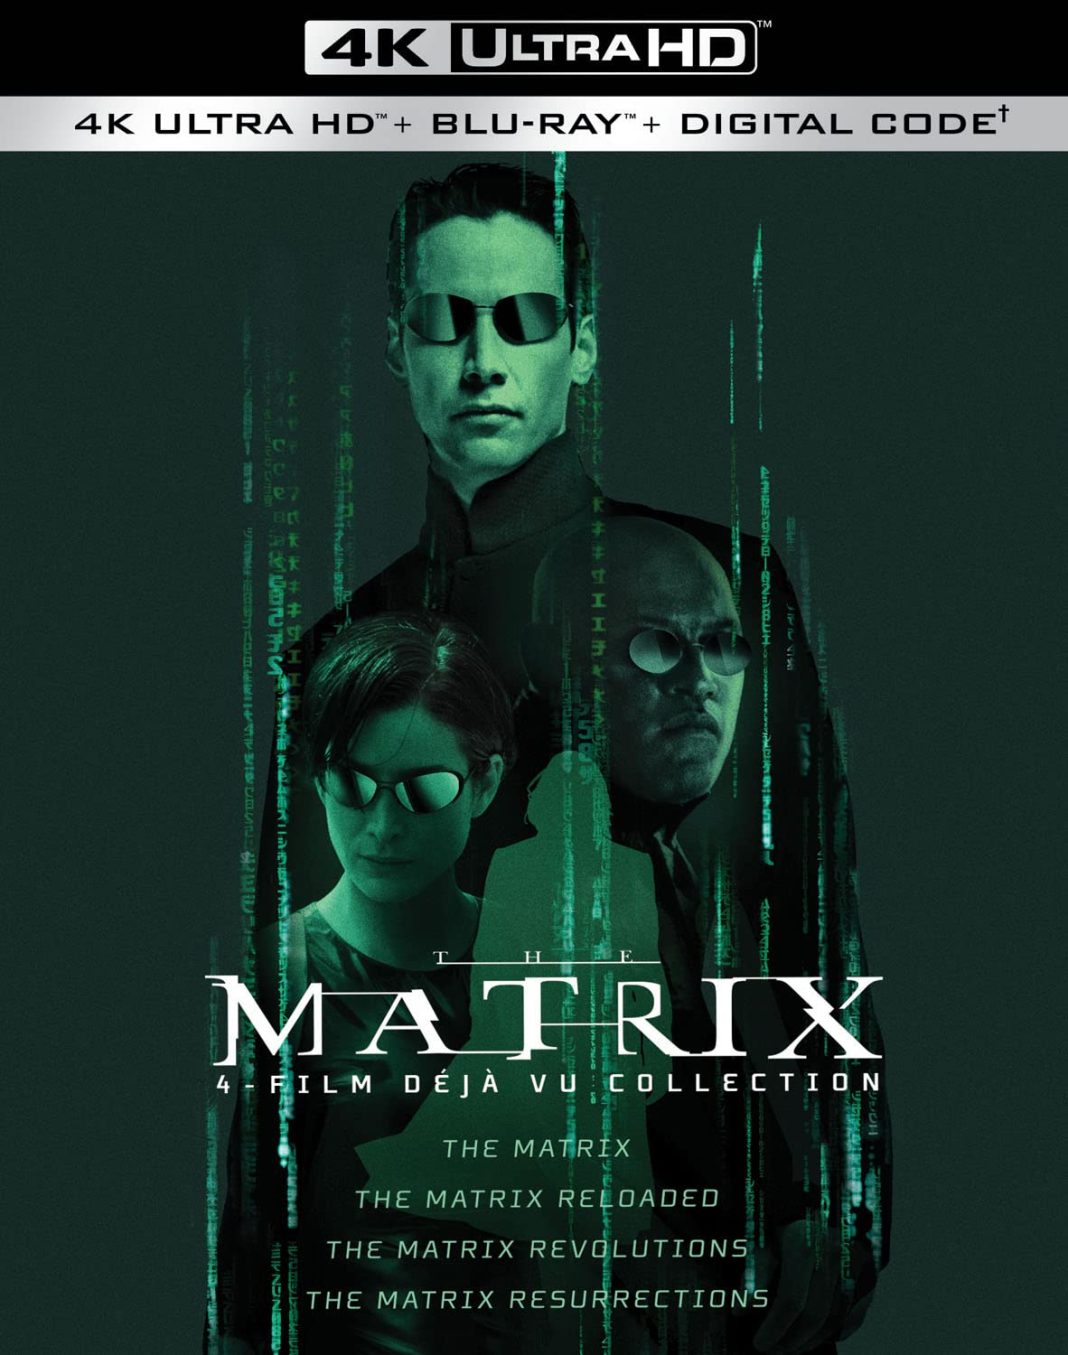 The Matrix 4Film Déjà Vu Collection Bluray & 4k Bluray Release Date